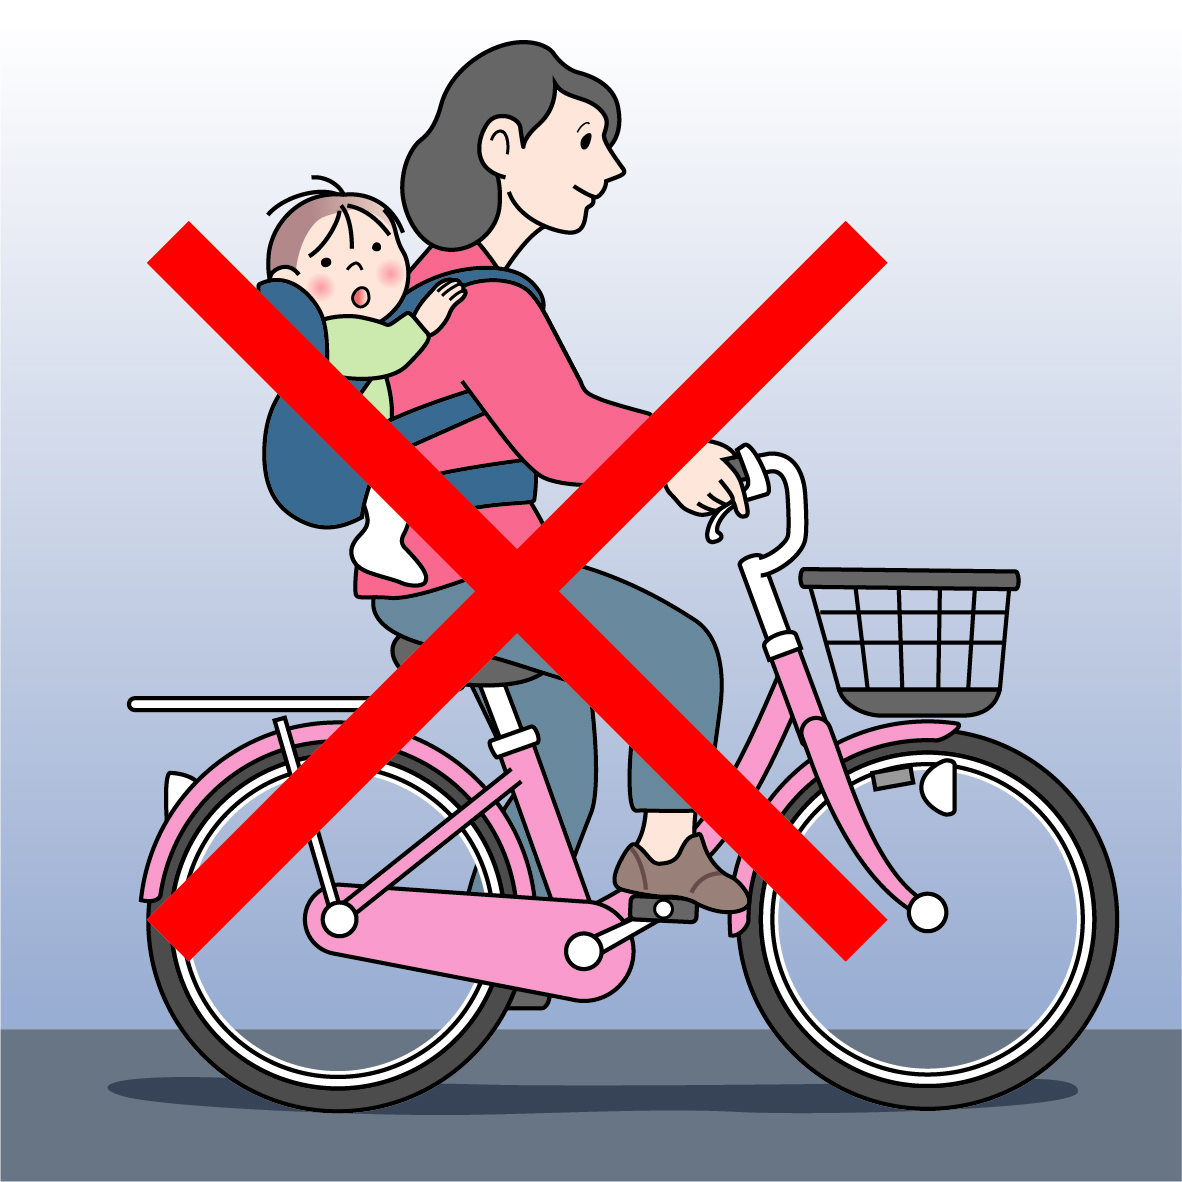 乳児をおんぶや抱っこして自転車に乗るのは大きな危険が伴う